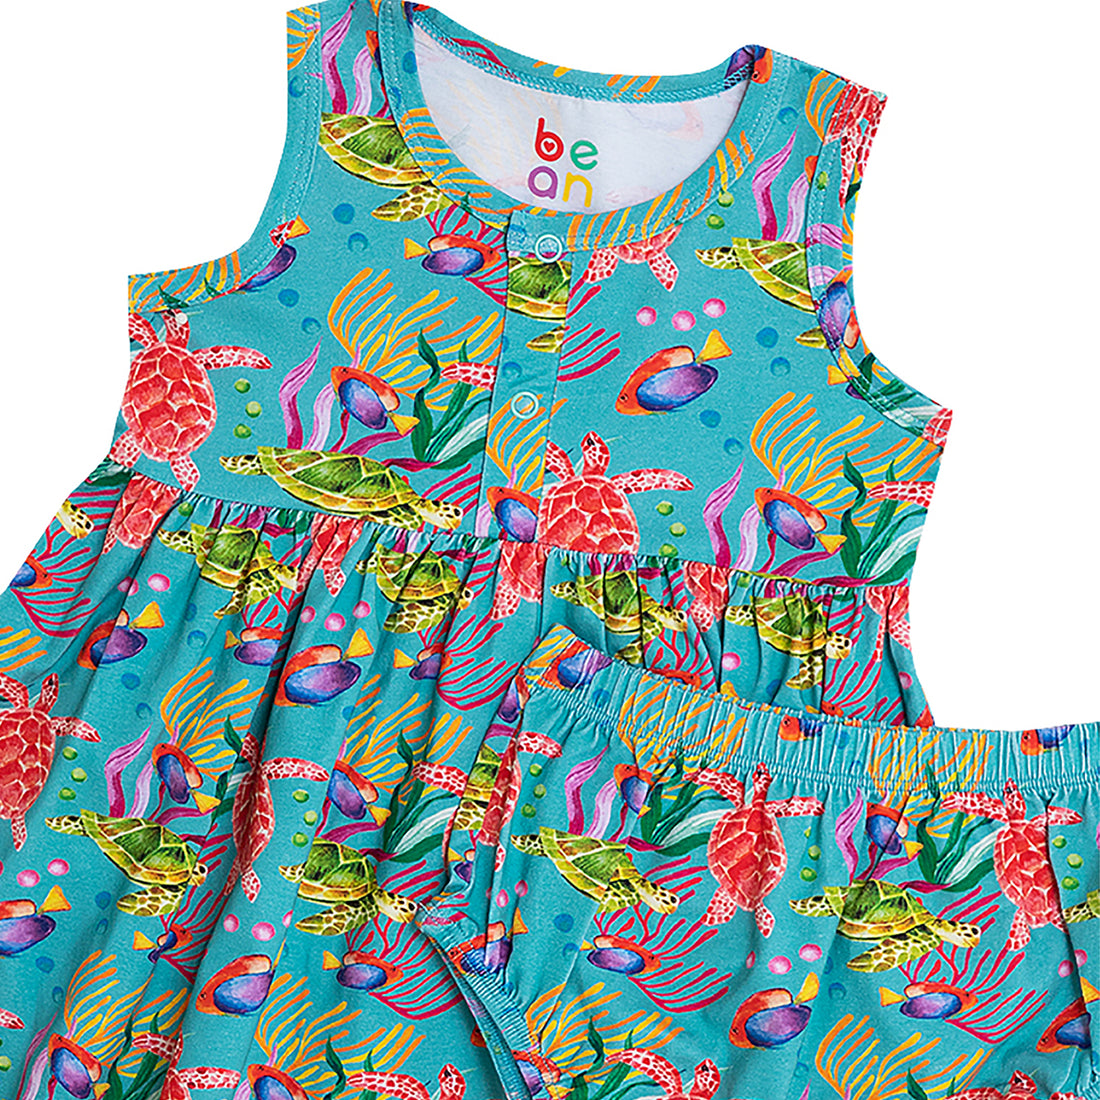 Wonder Playsuits Anina Rubio Turtle Aklan Dress with Bloomer Set